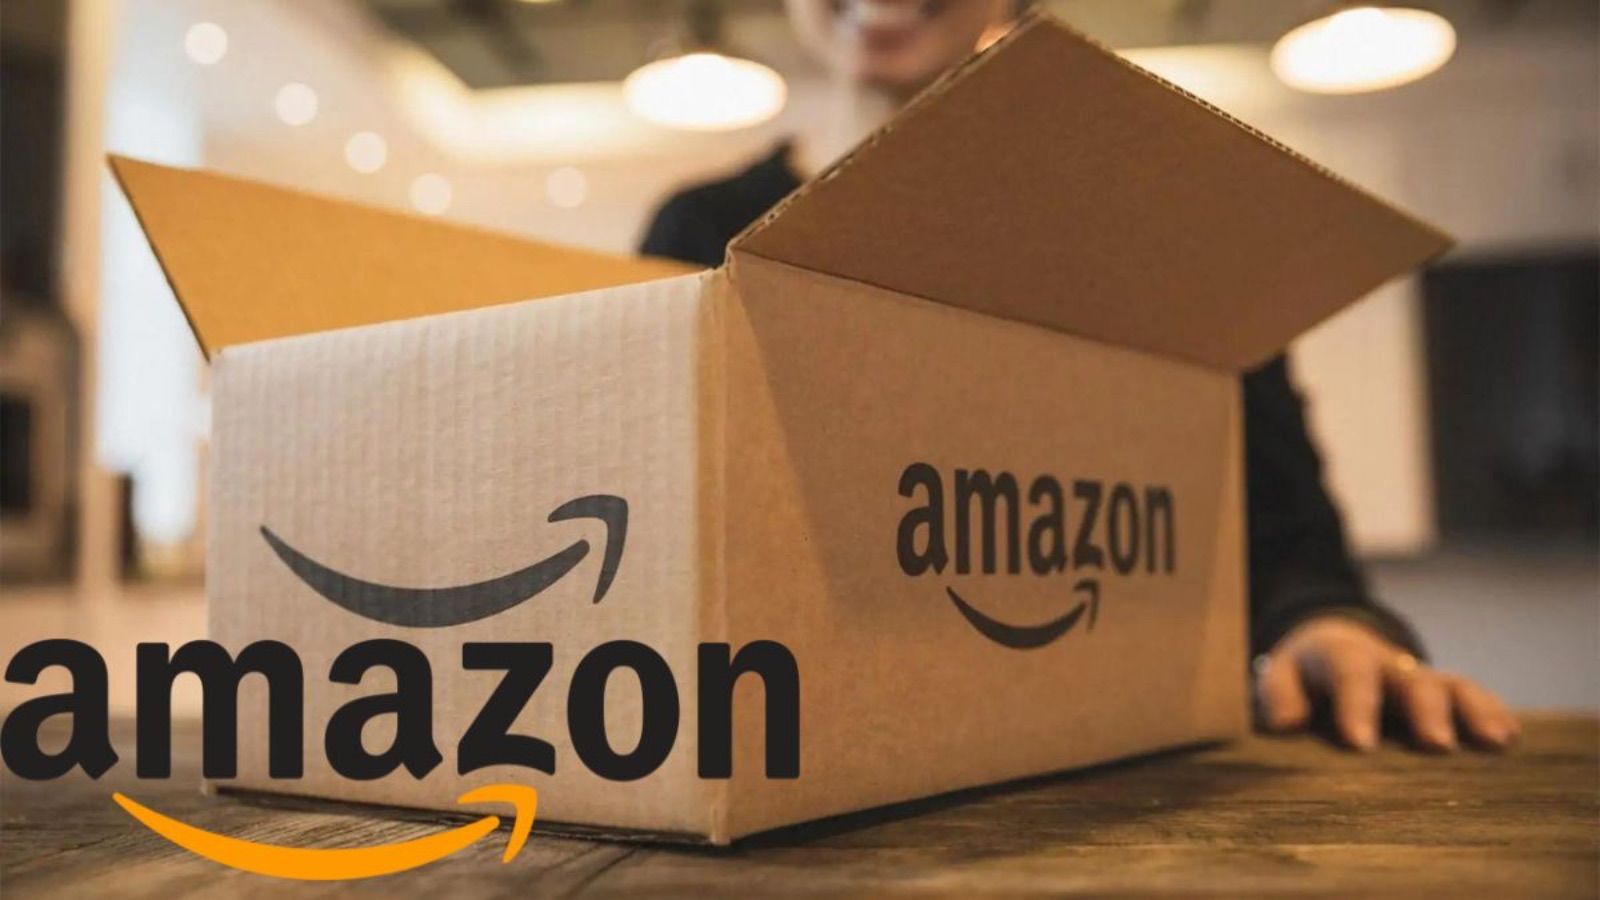 Amazon FOLLE, agosto pieno di offerte segrete al 90% di sconto